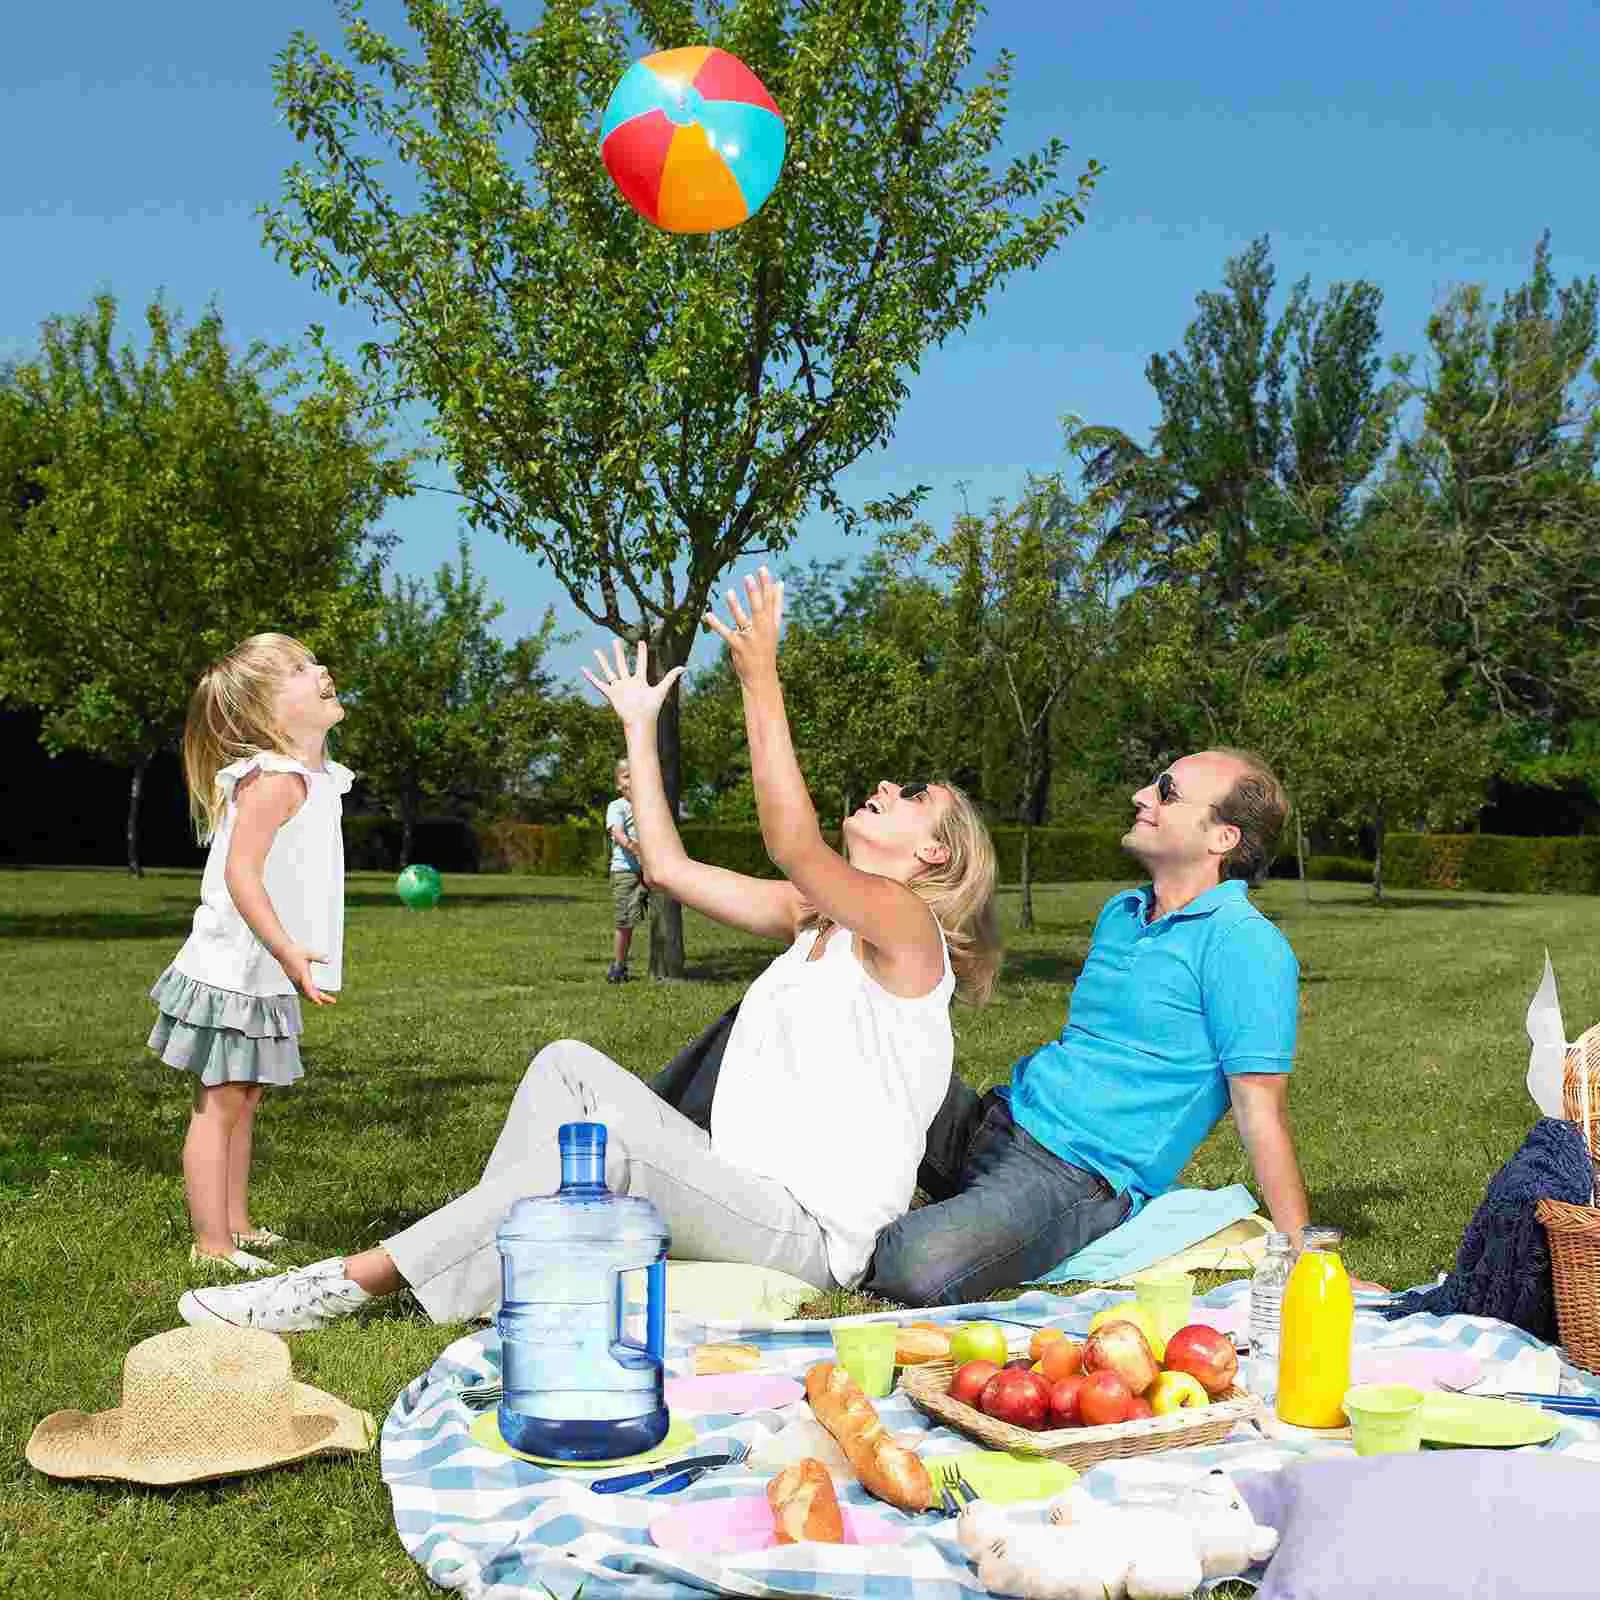 Развлечение выходного дня. Семейный праздник на природе. Пикник на природе. Пикник с семьей на природе. Семейная фотосессия пикник.